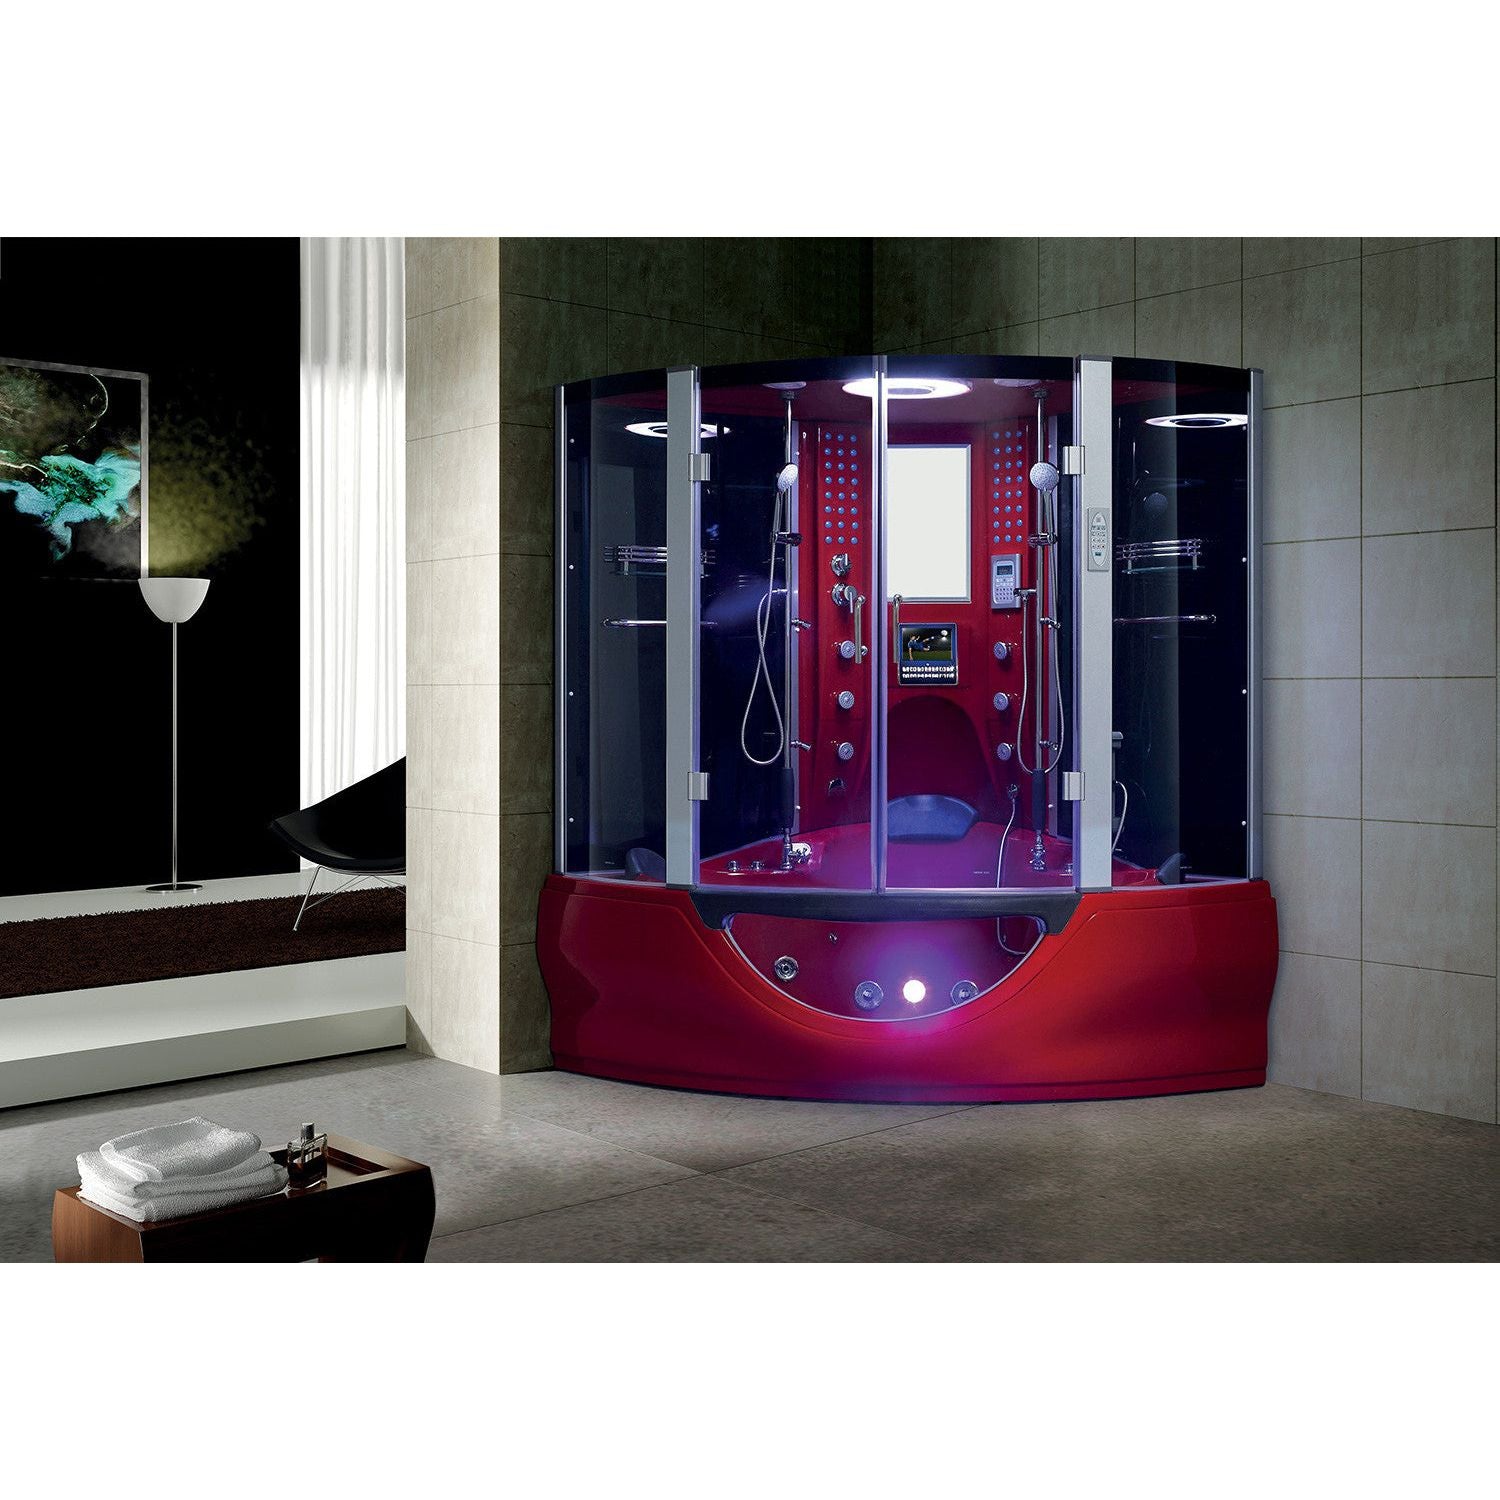 Maya Bath Valencia 2-Person Steam Shower & Tub Combo w/ TV - Serenity Provision